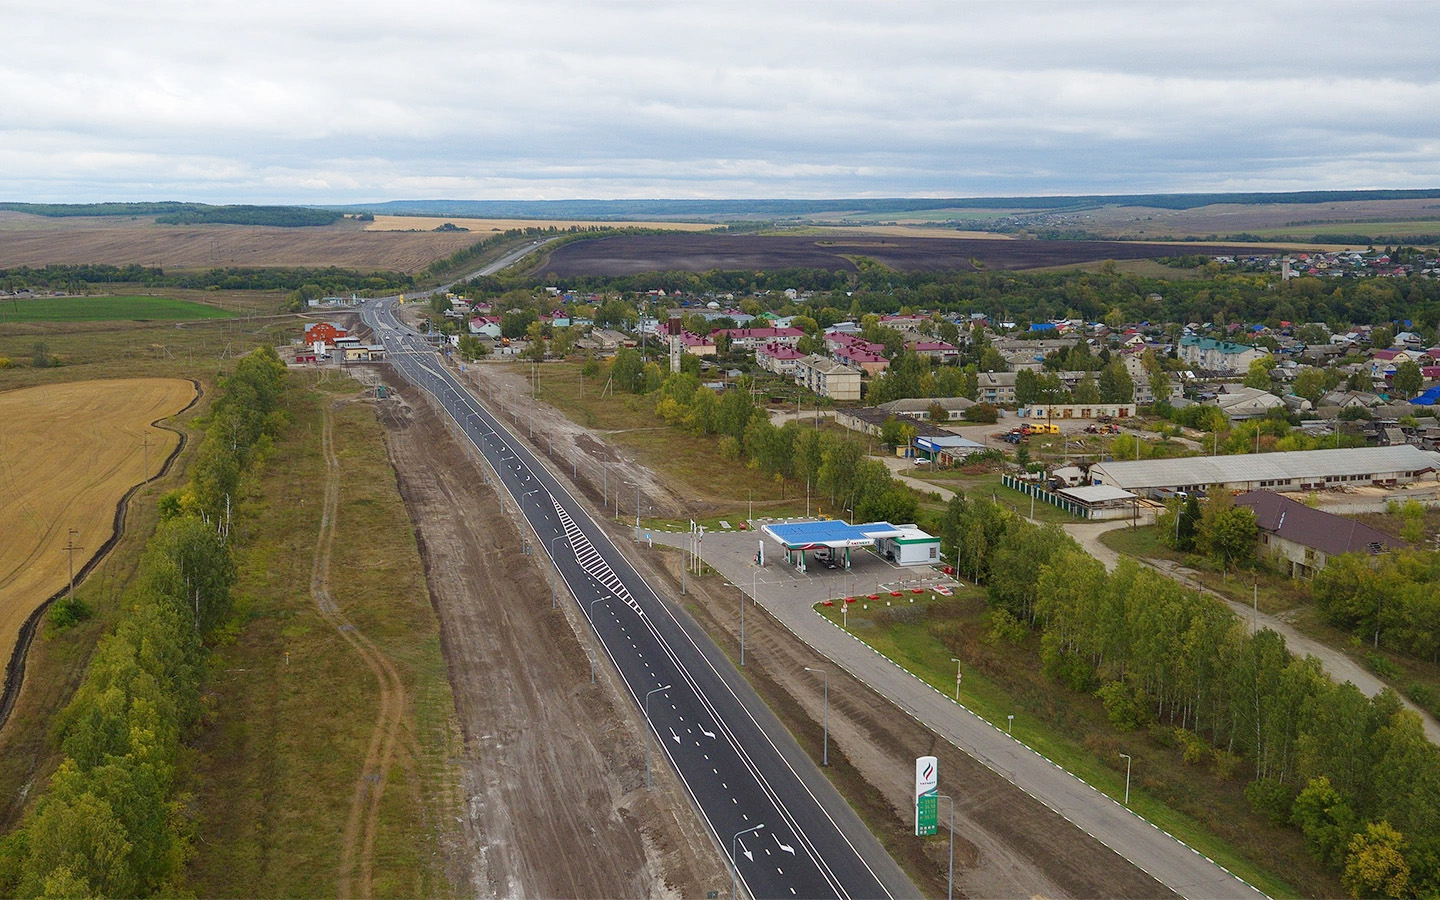 
Участок М-5 Урал в посёлке Тереньга (Сызранское шоссе)